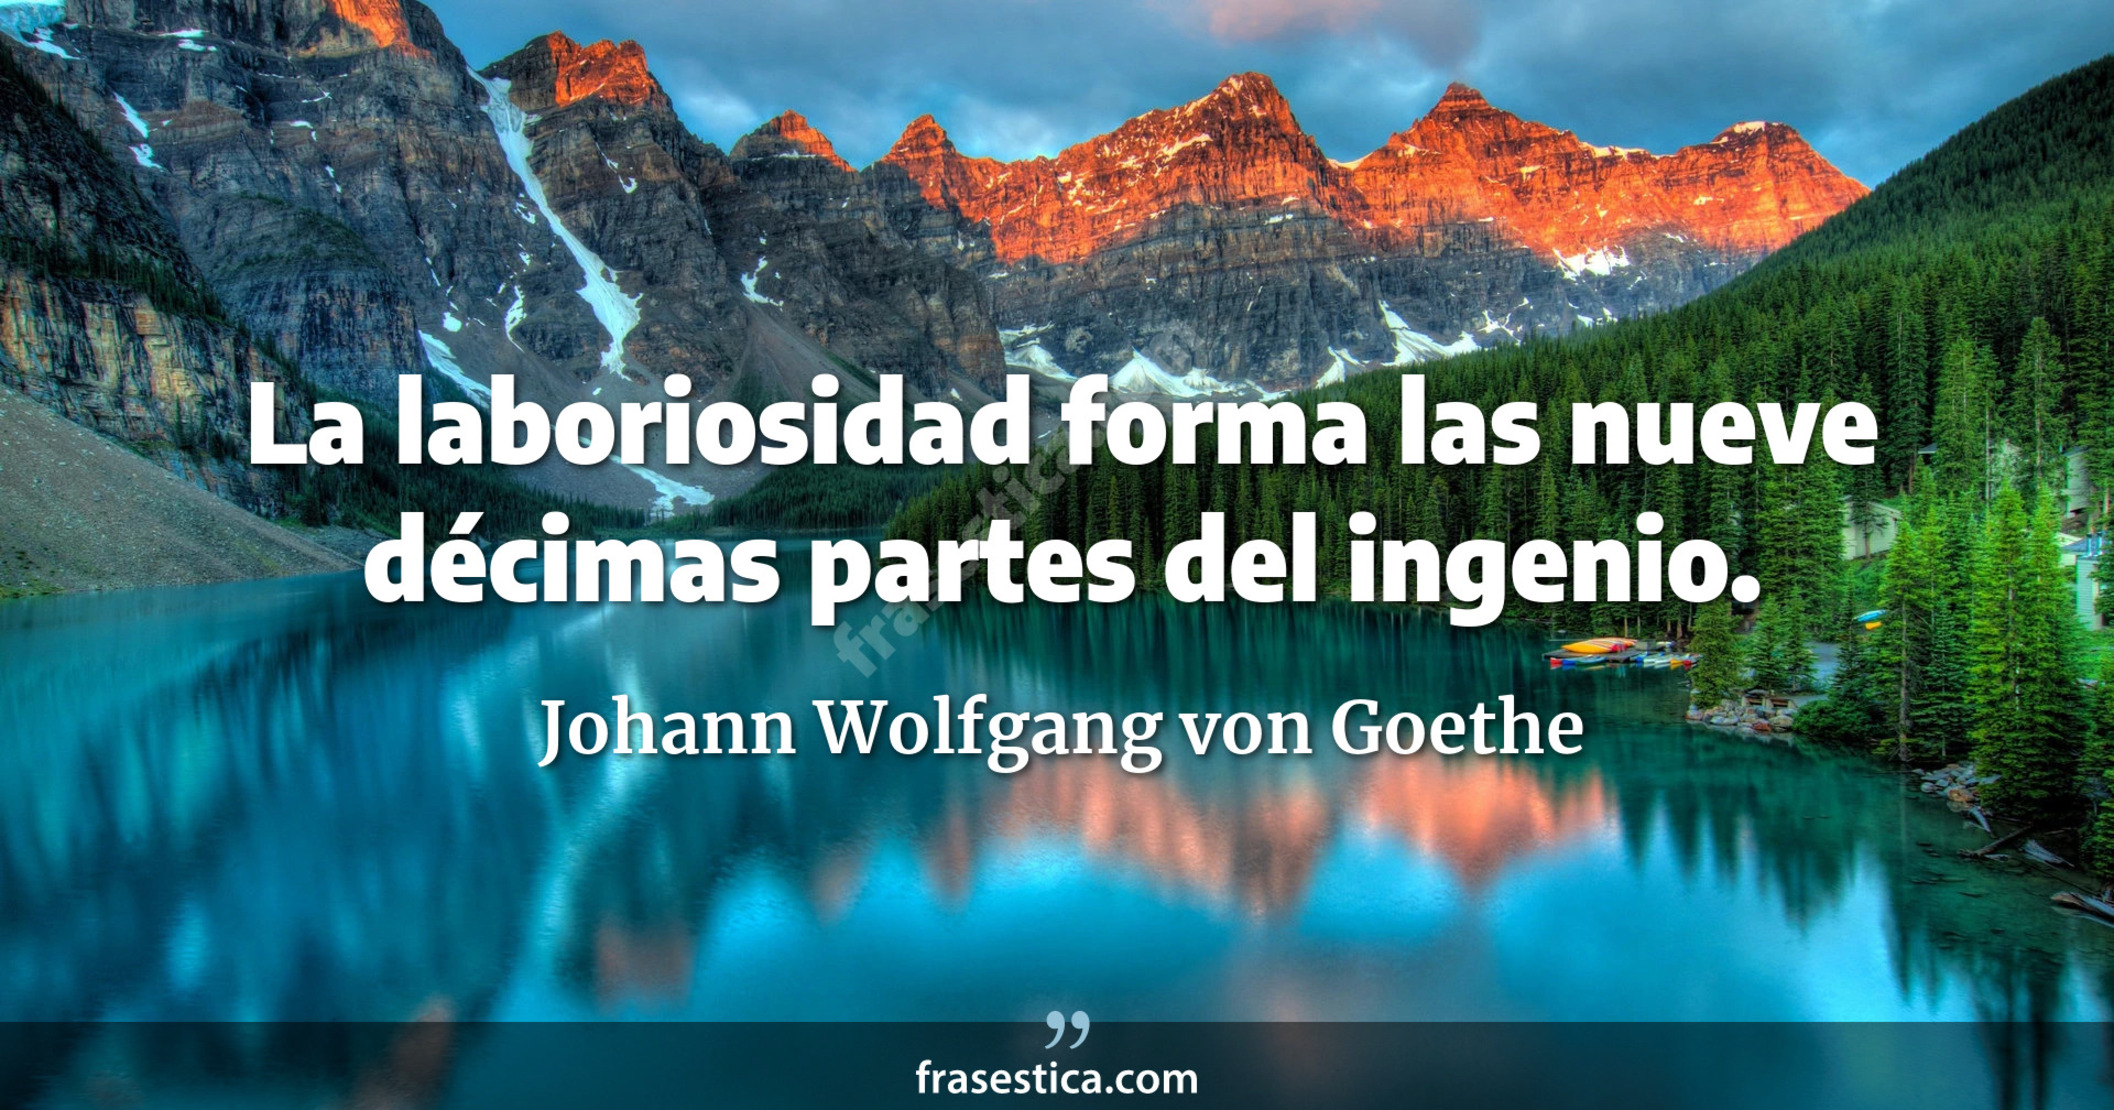 La laboriosidad forma las nueve décimas partes del ingenio. - Johann Wolfgang von Goethe